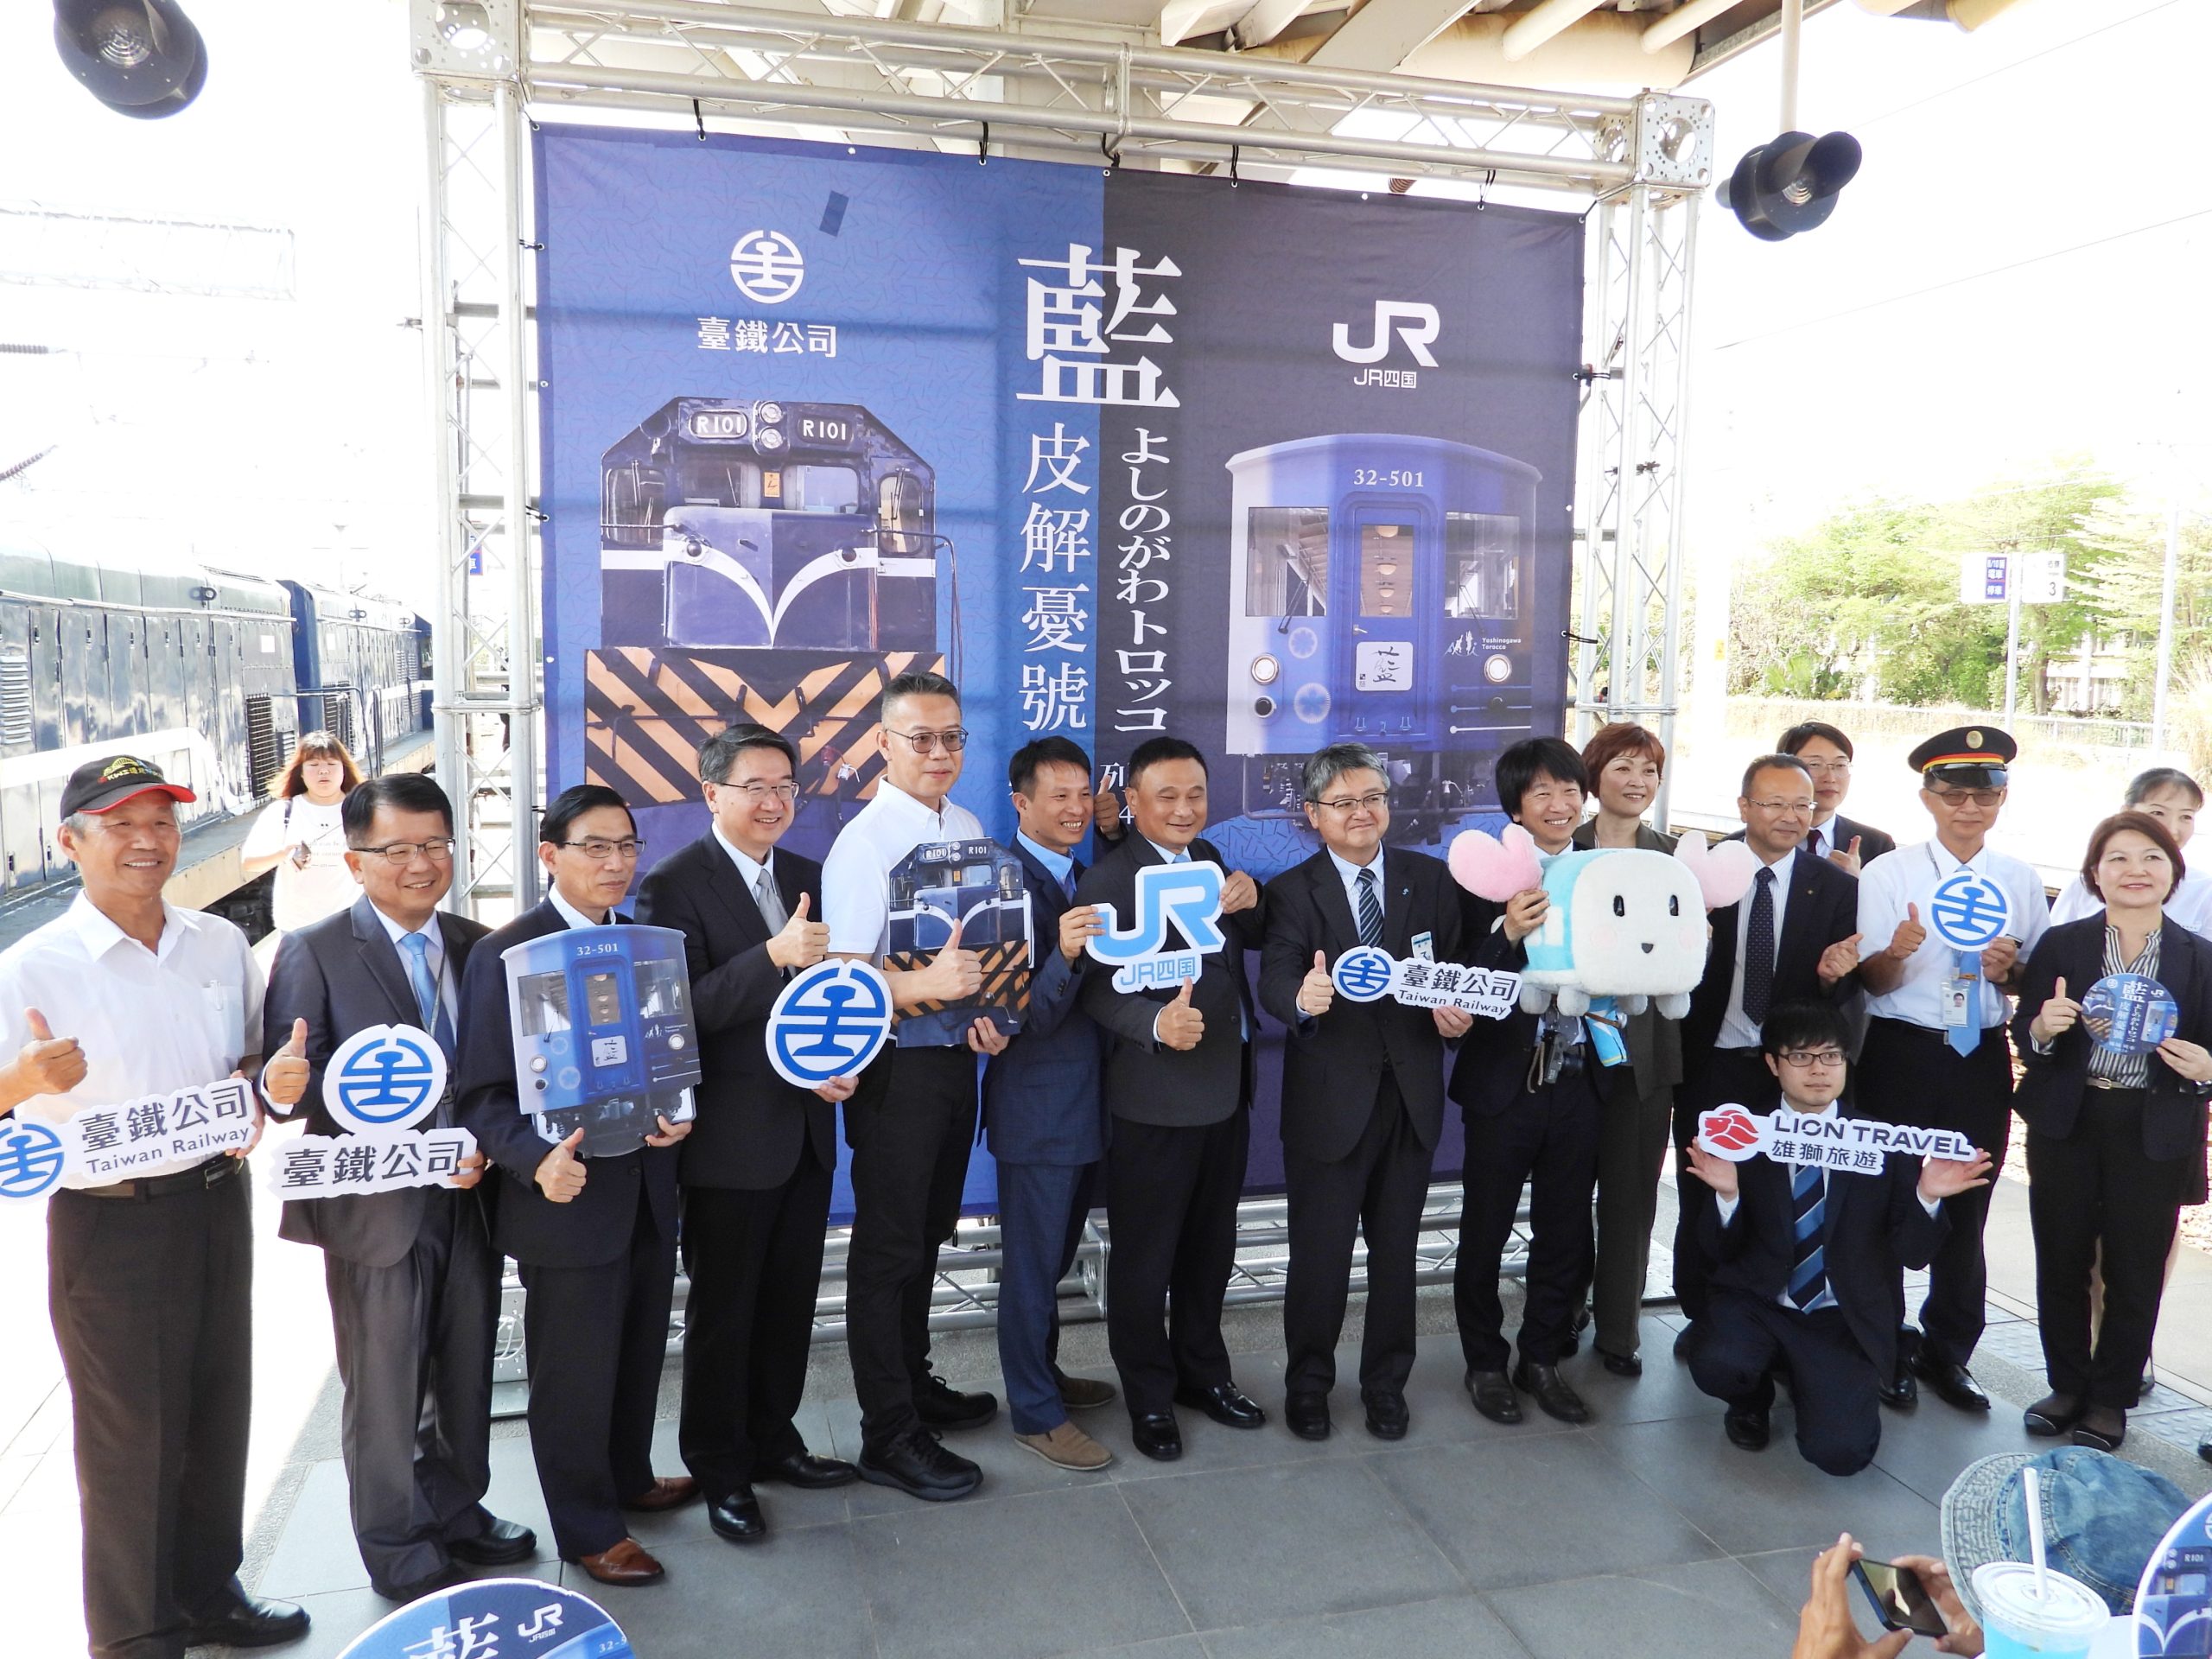 藍色懷舊 臺鐵公司「藍皮解憂號」與日本四國「藍吉野川觀光小火車」 締結姊妹車輛協定